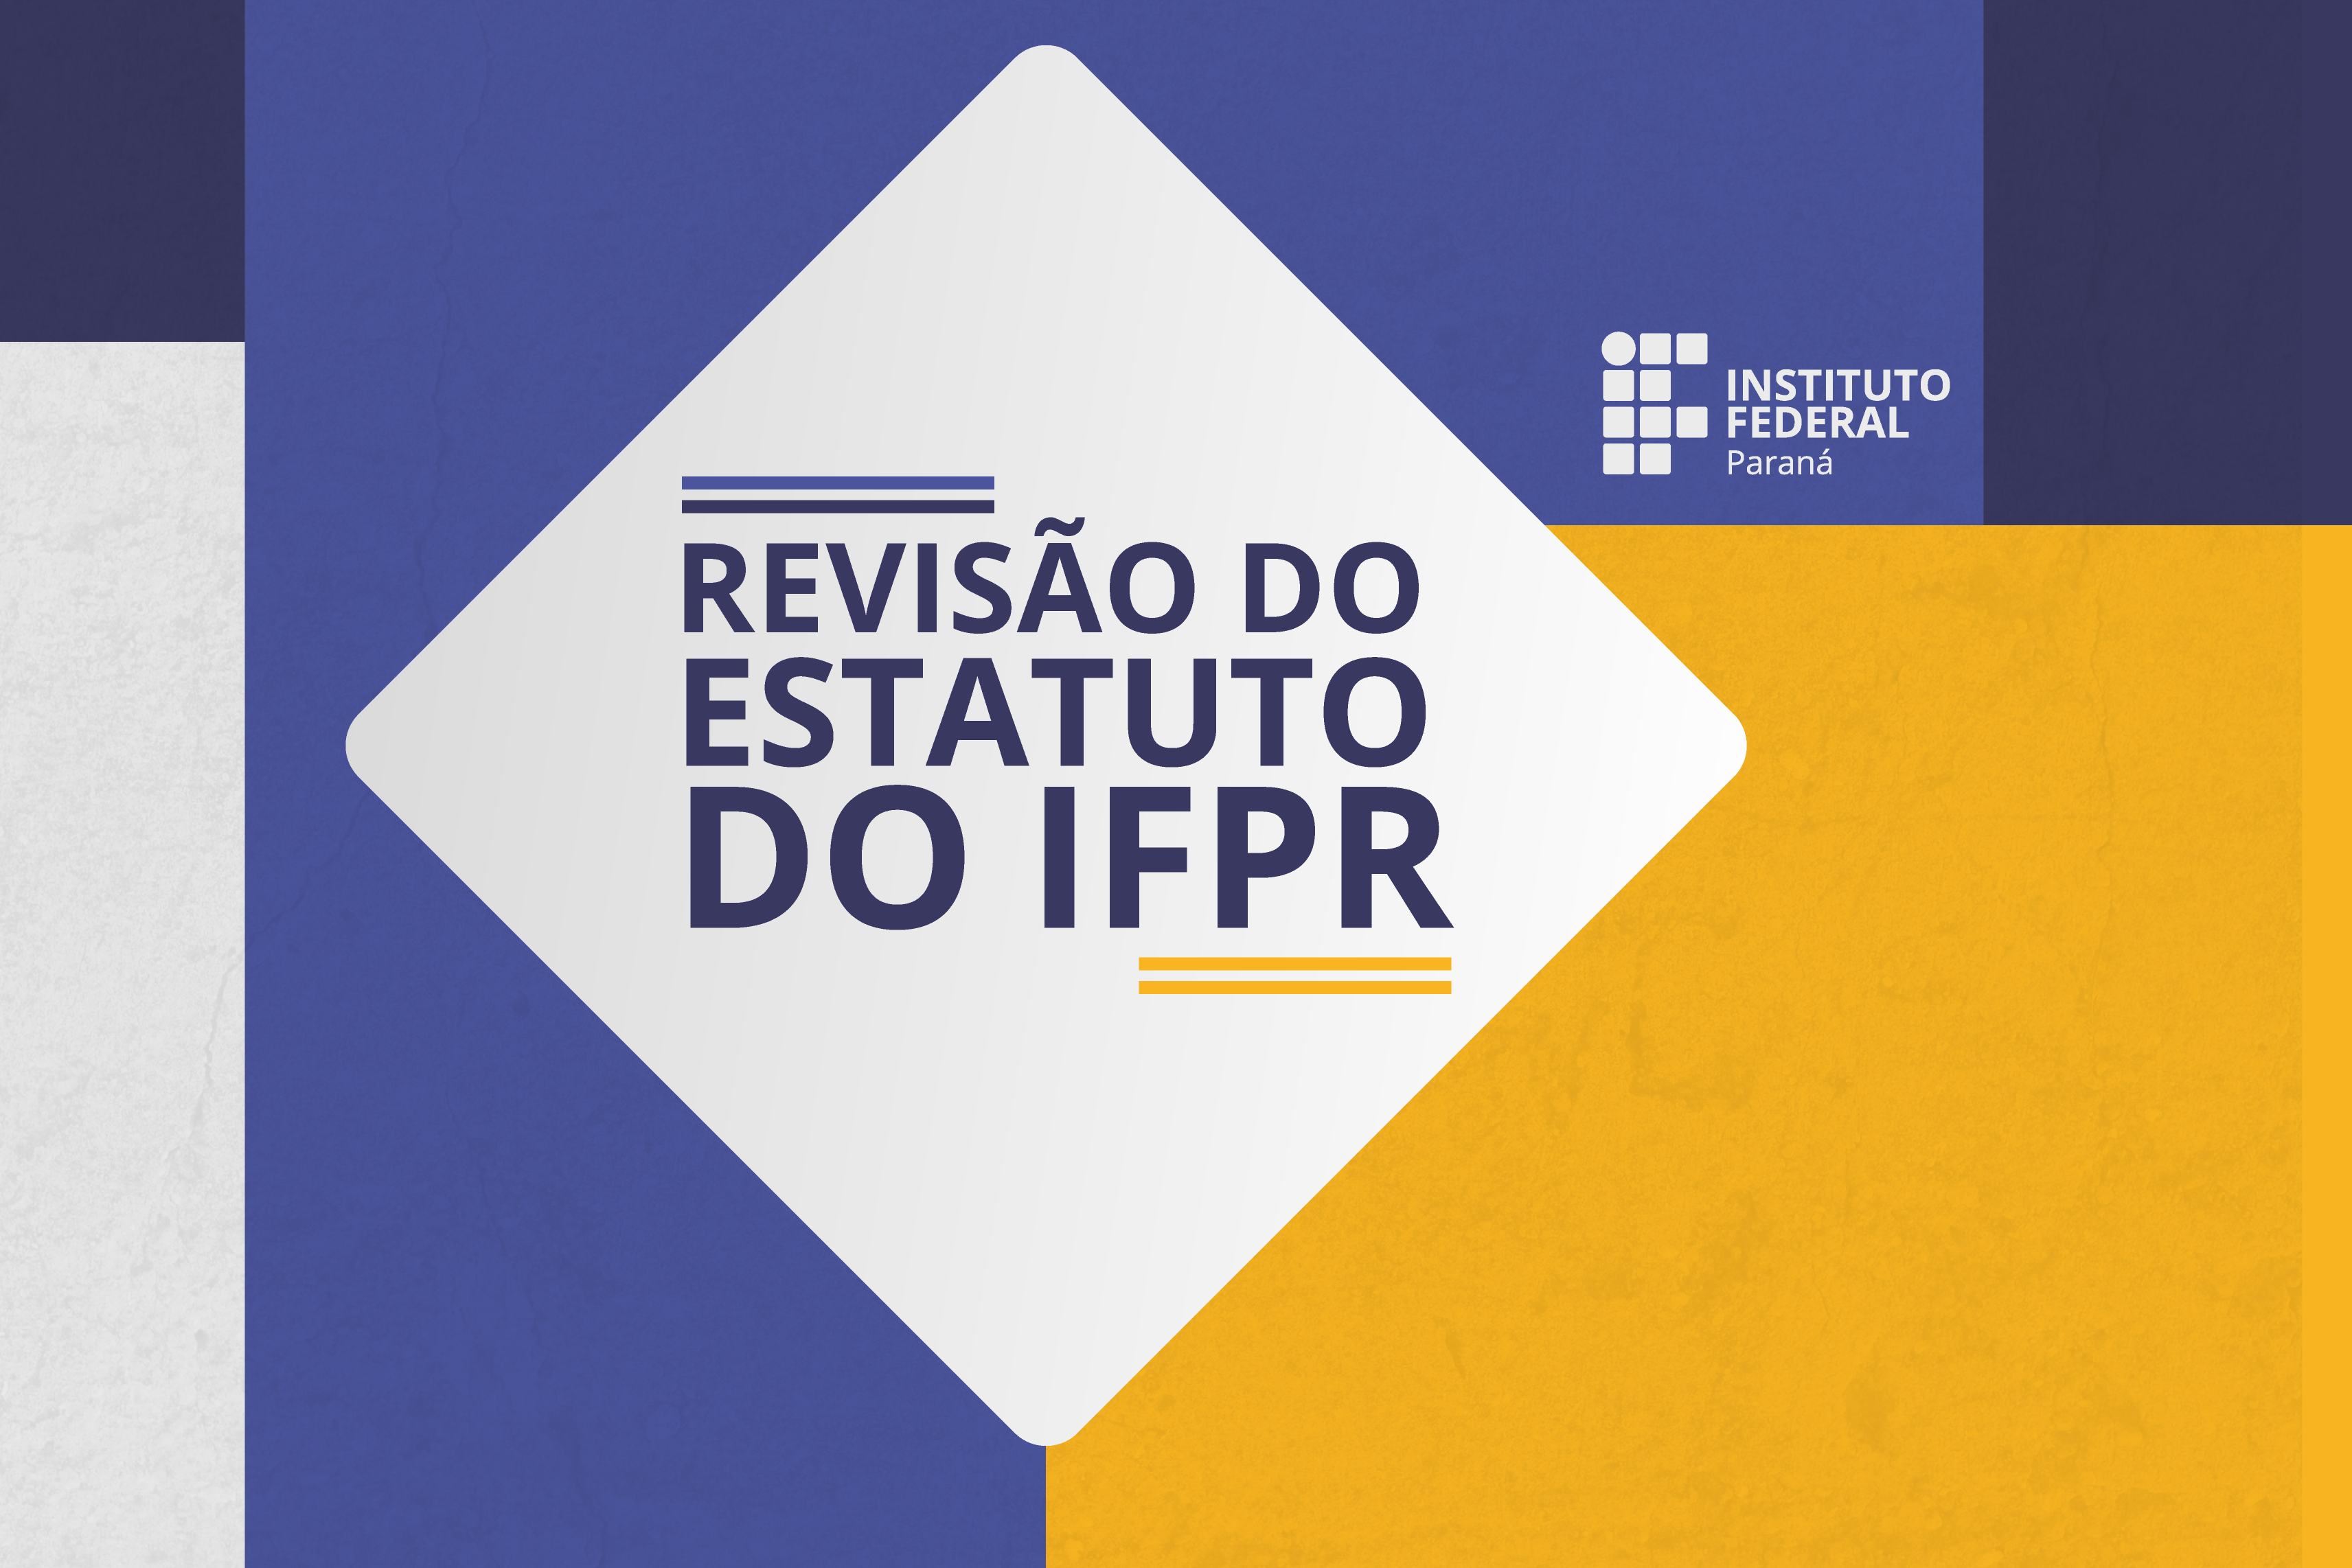 Imagem com fundo colorido. Em primeiro plano, está o texto: "Revisão do Estatuto do IFPR".